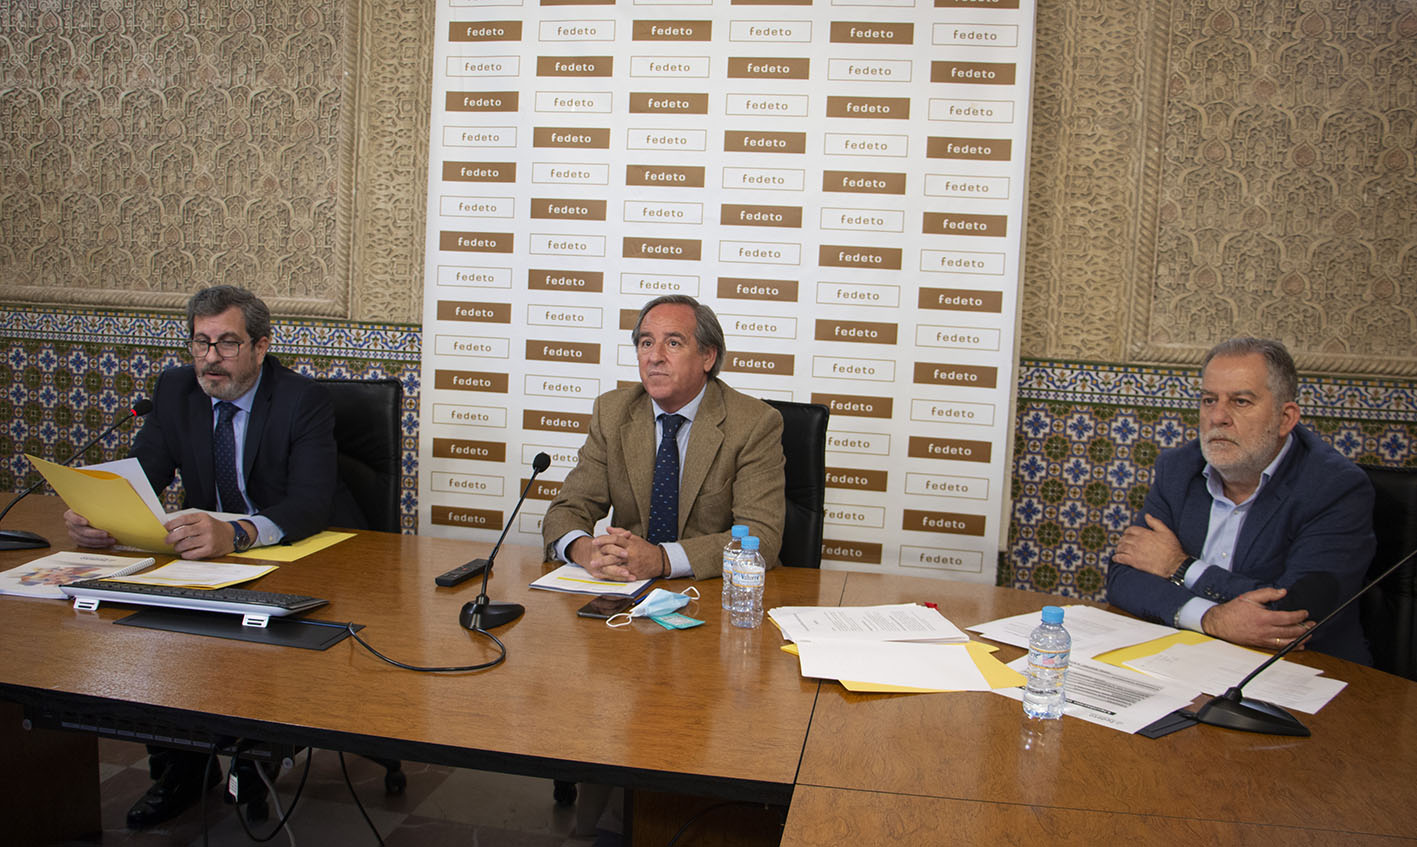 A la derecha, el secretario general de Fedeto, Manuel Madruga, en el centro, el presidente de Fedeto, Ángel Nicolás.